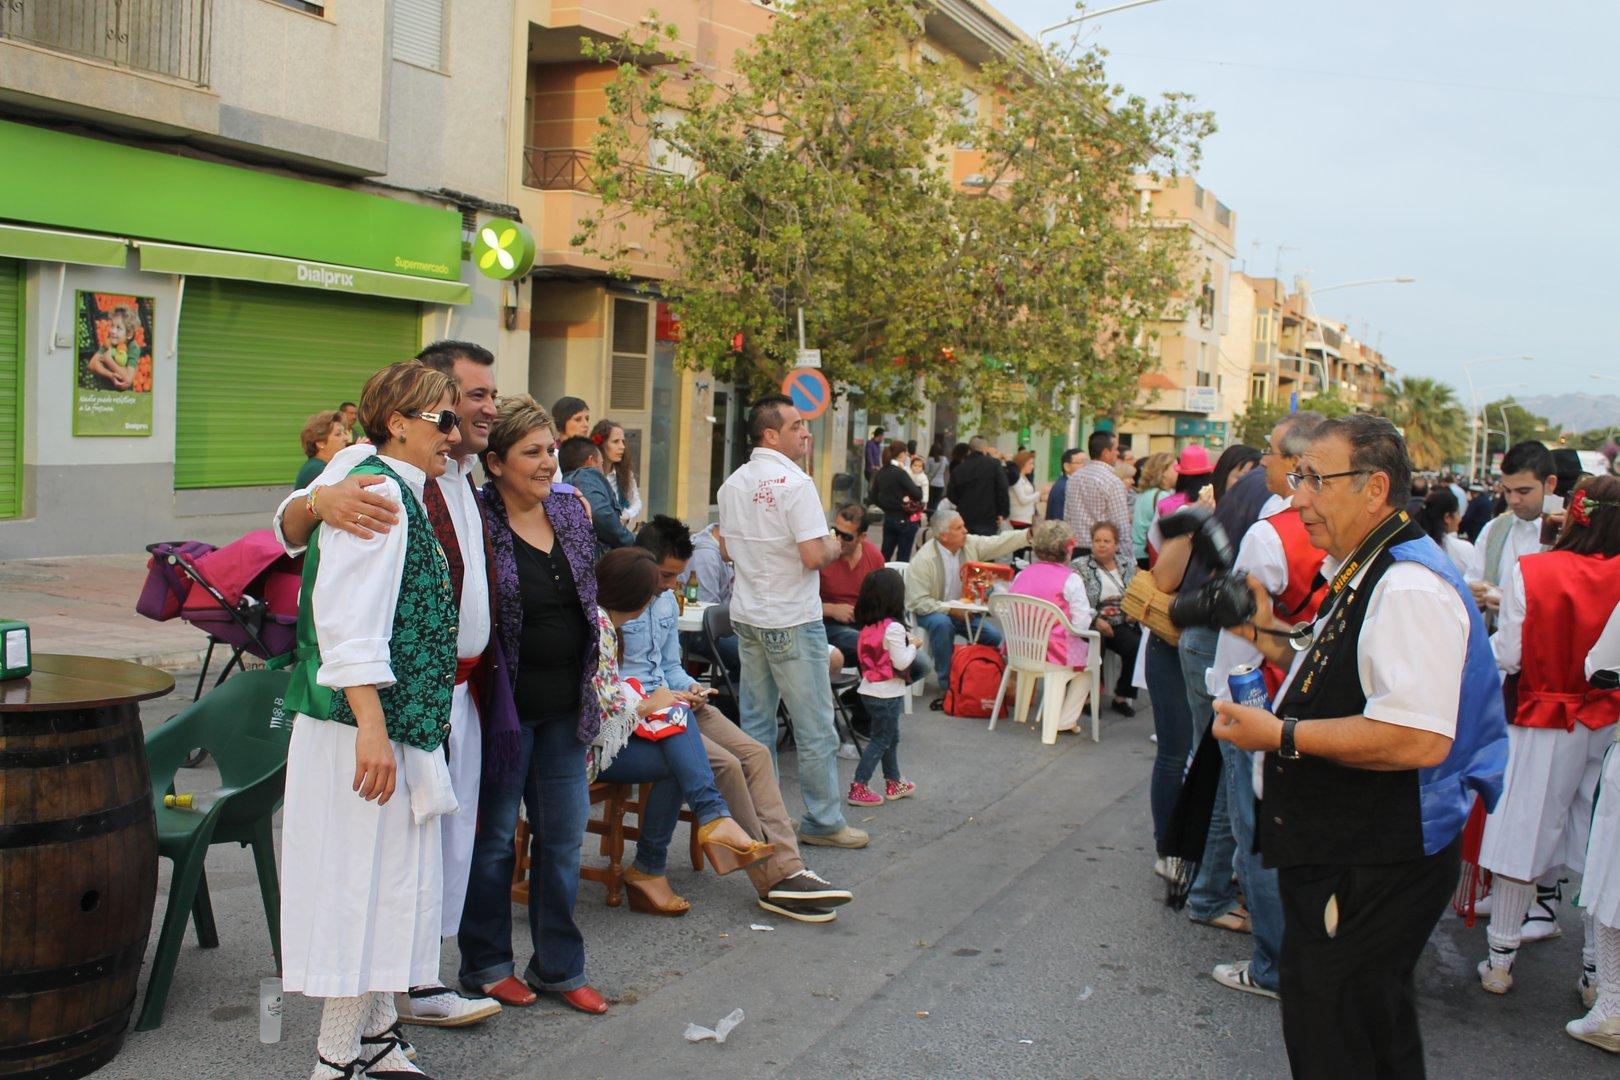 Las Carrozas en Las Fiestas de San Isidro 2014 de Fortuna